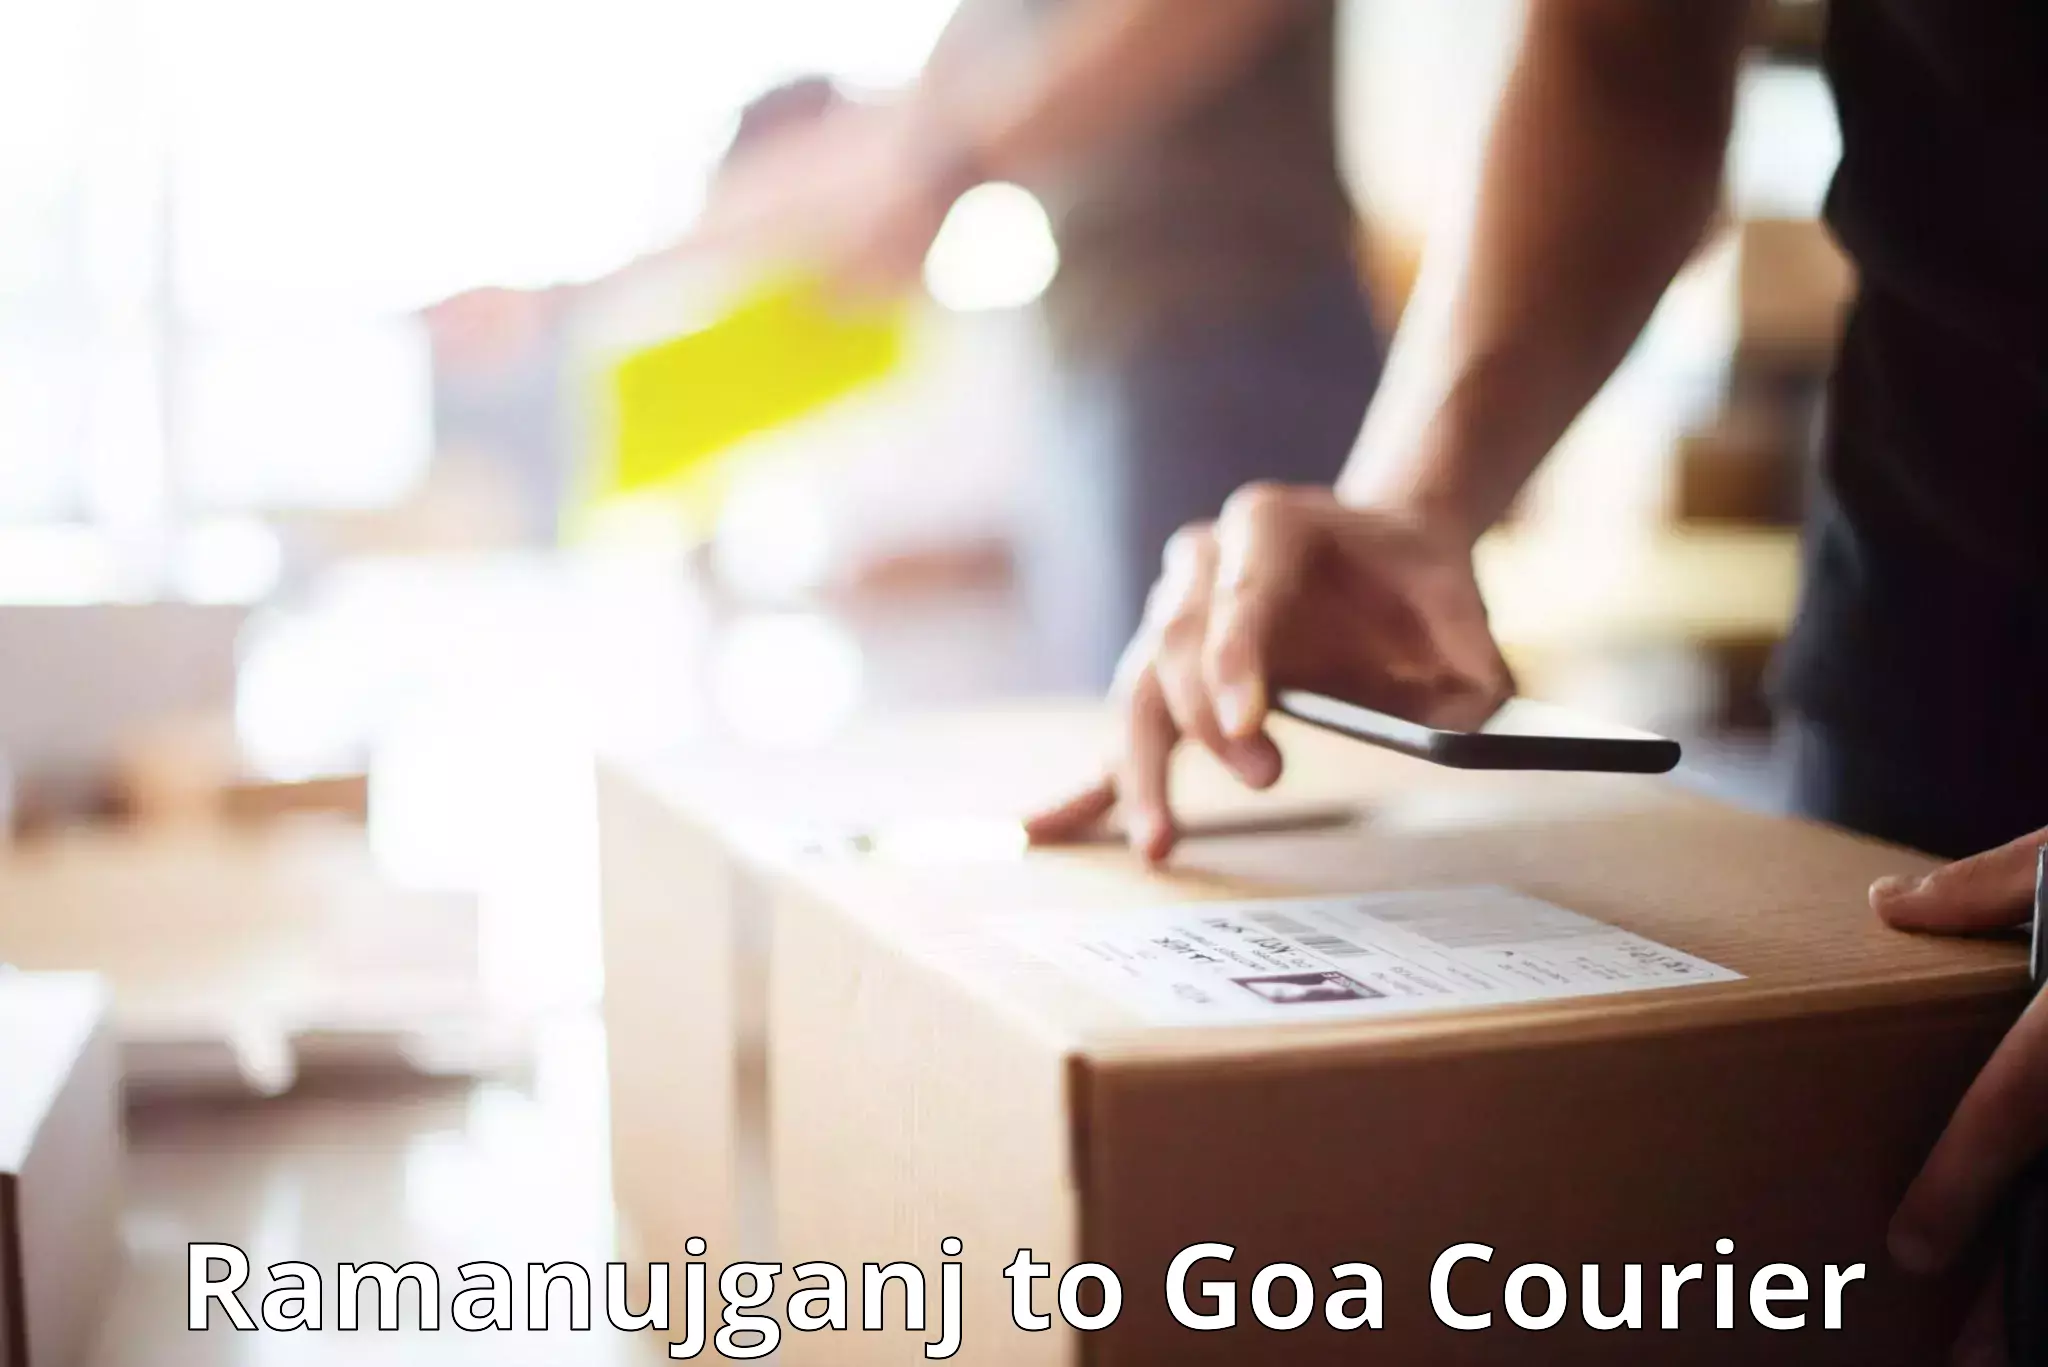 Regional luggage transport Ramanujganj to Goa